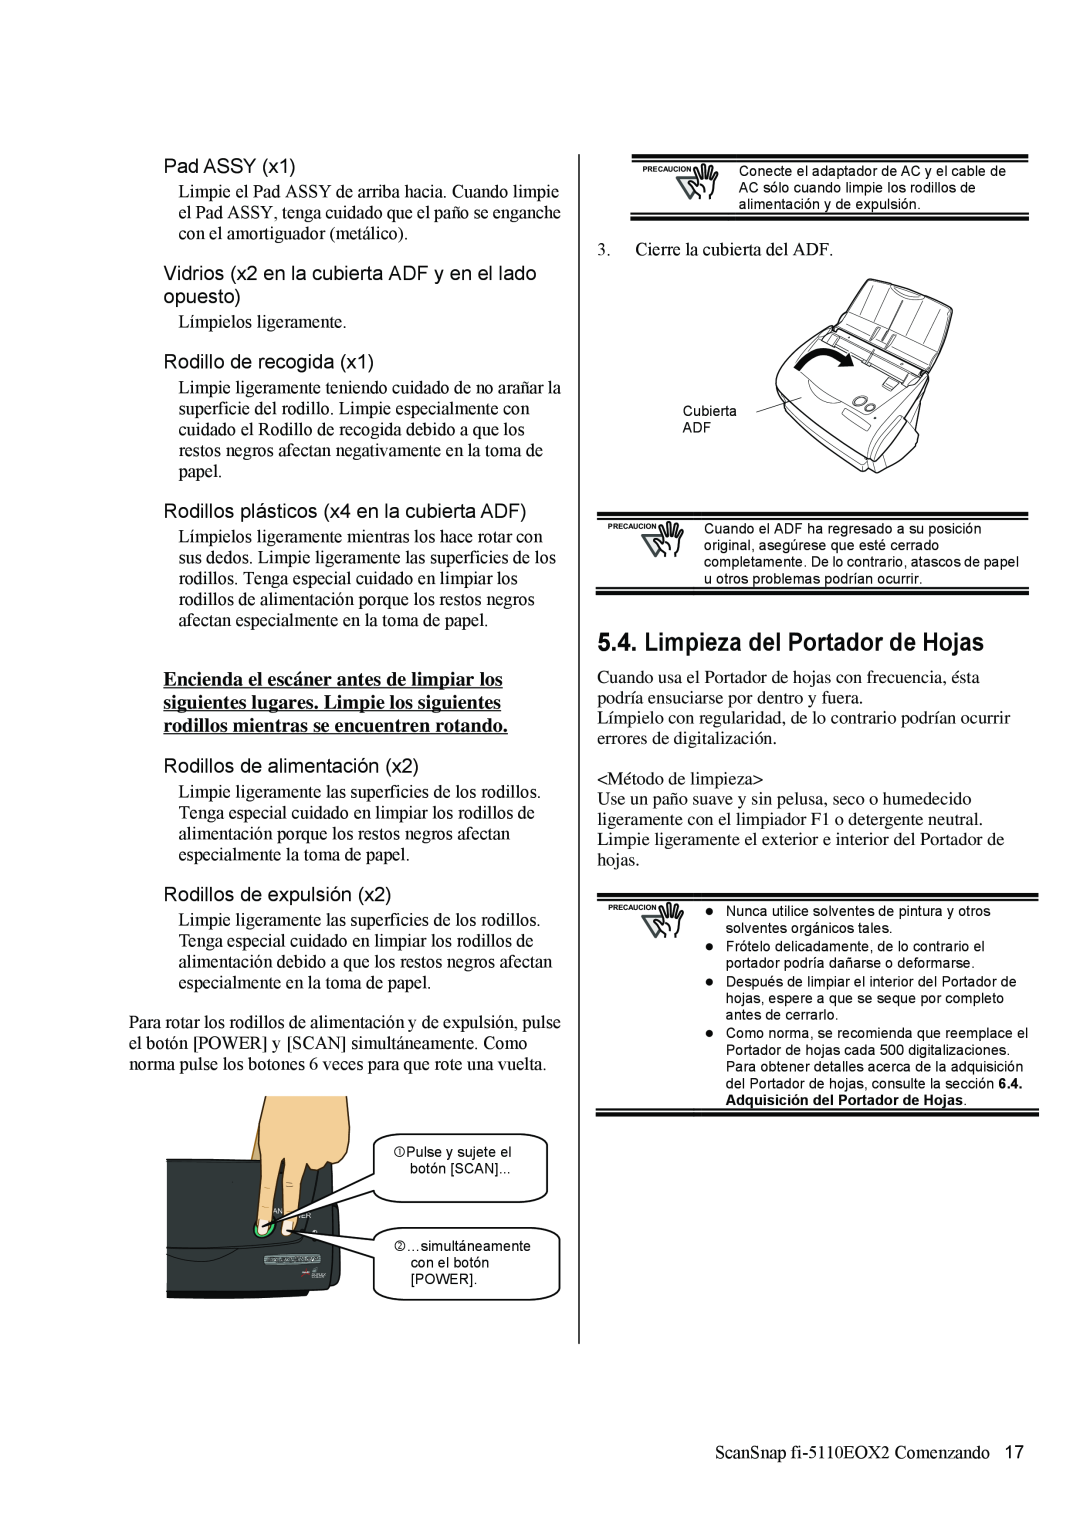 Fujitsu fi-5110EOX2 manual Limpieza del Portador de Hojas, Pad ASSY, Vidrios x2 en la cubierta ADF y en el lado opuesto 